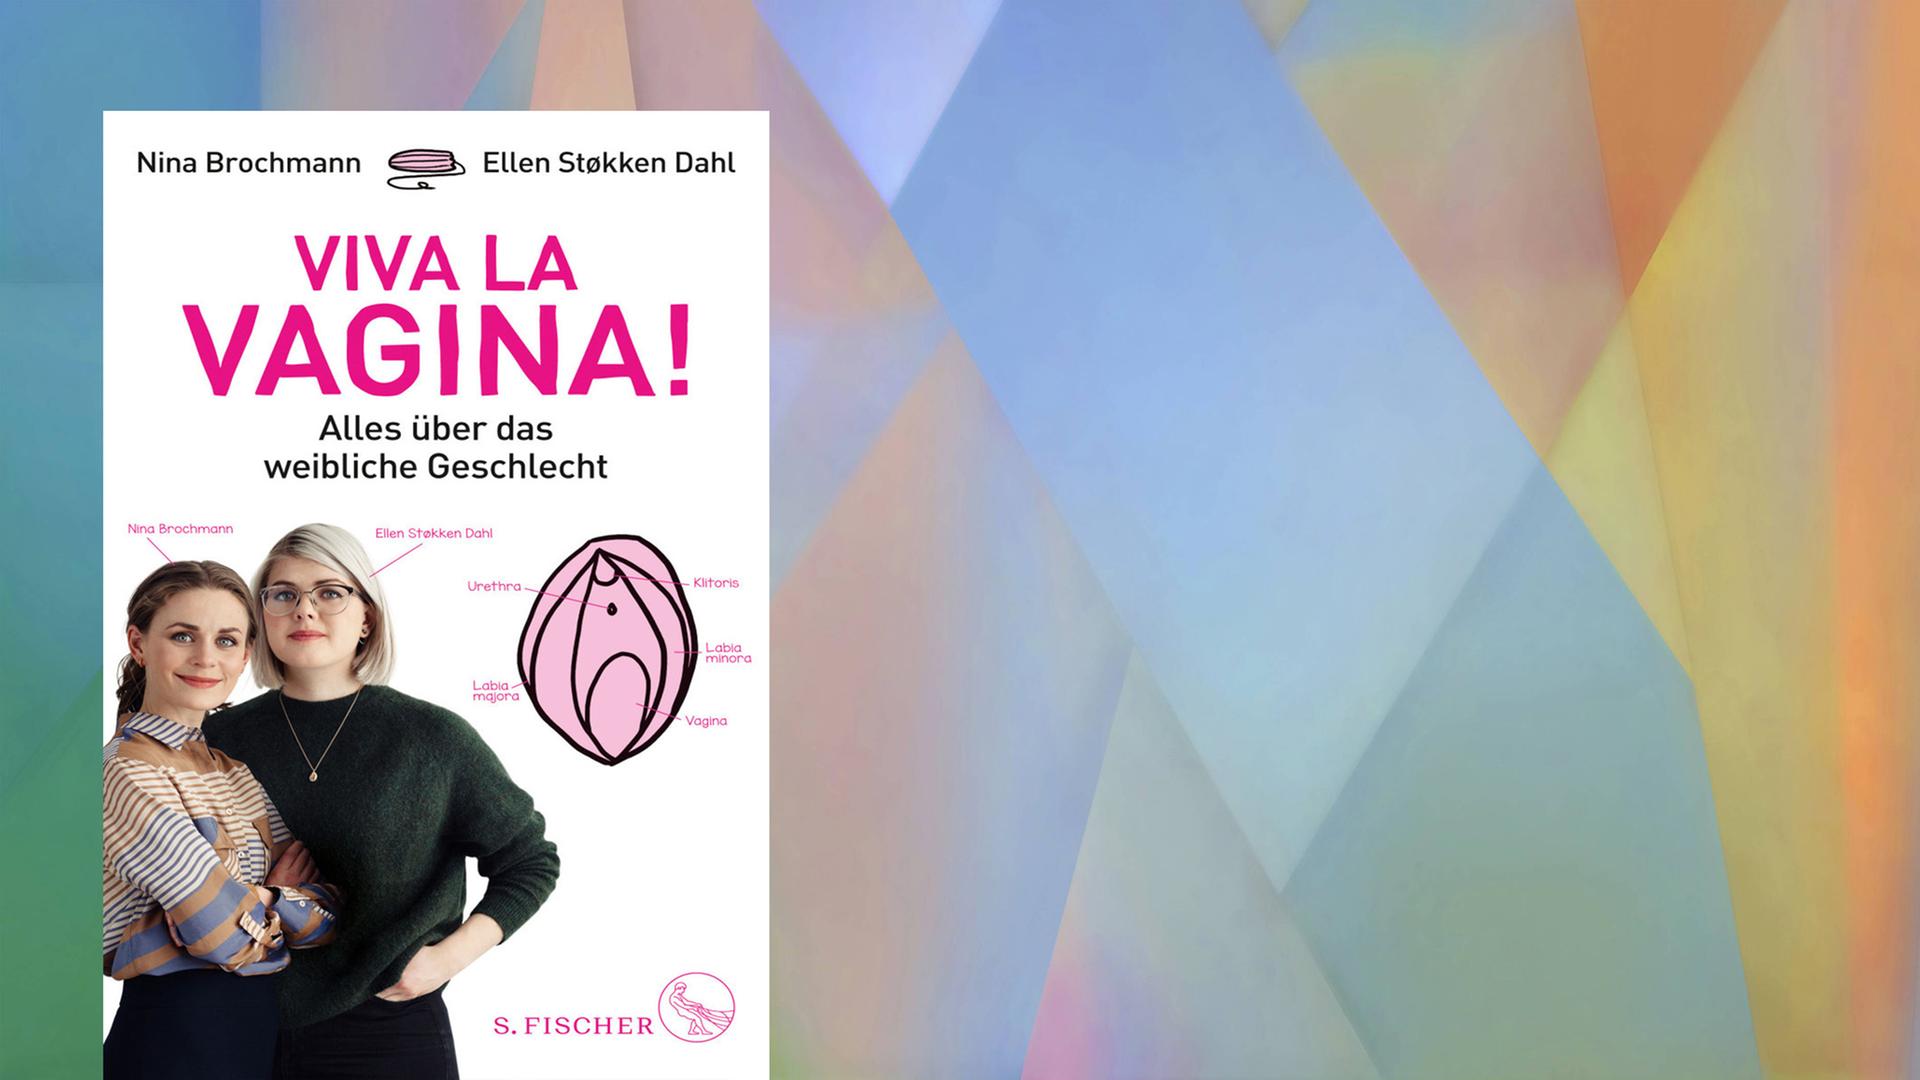 Buchcover "Viva La Vagina!" von Nina Brochmann und Ellen Støkken Dahl